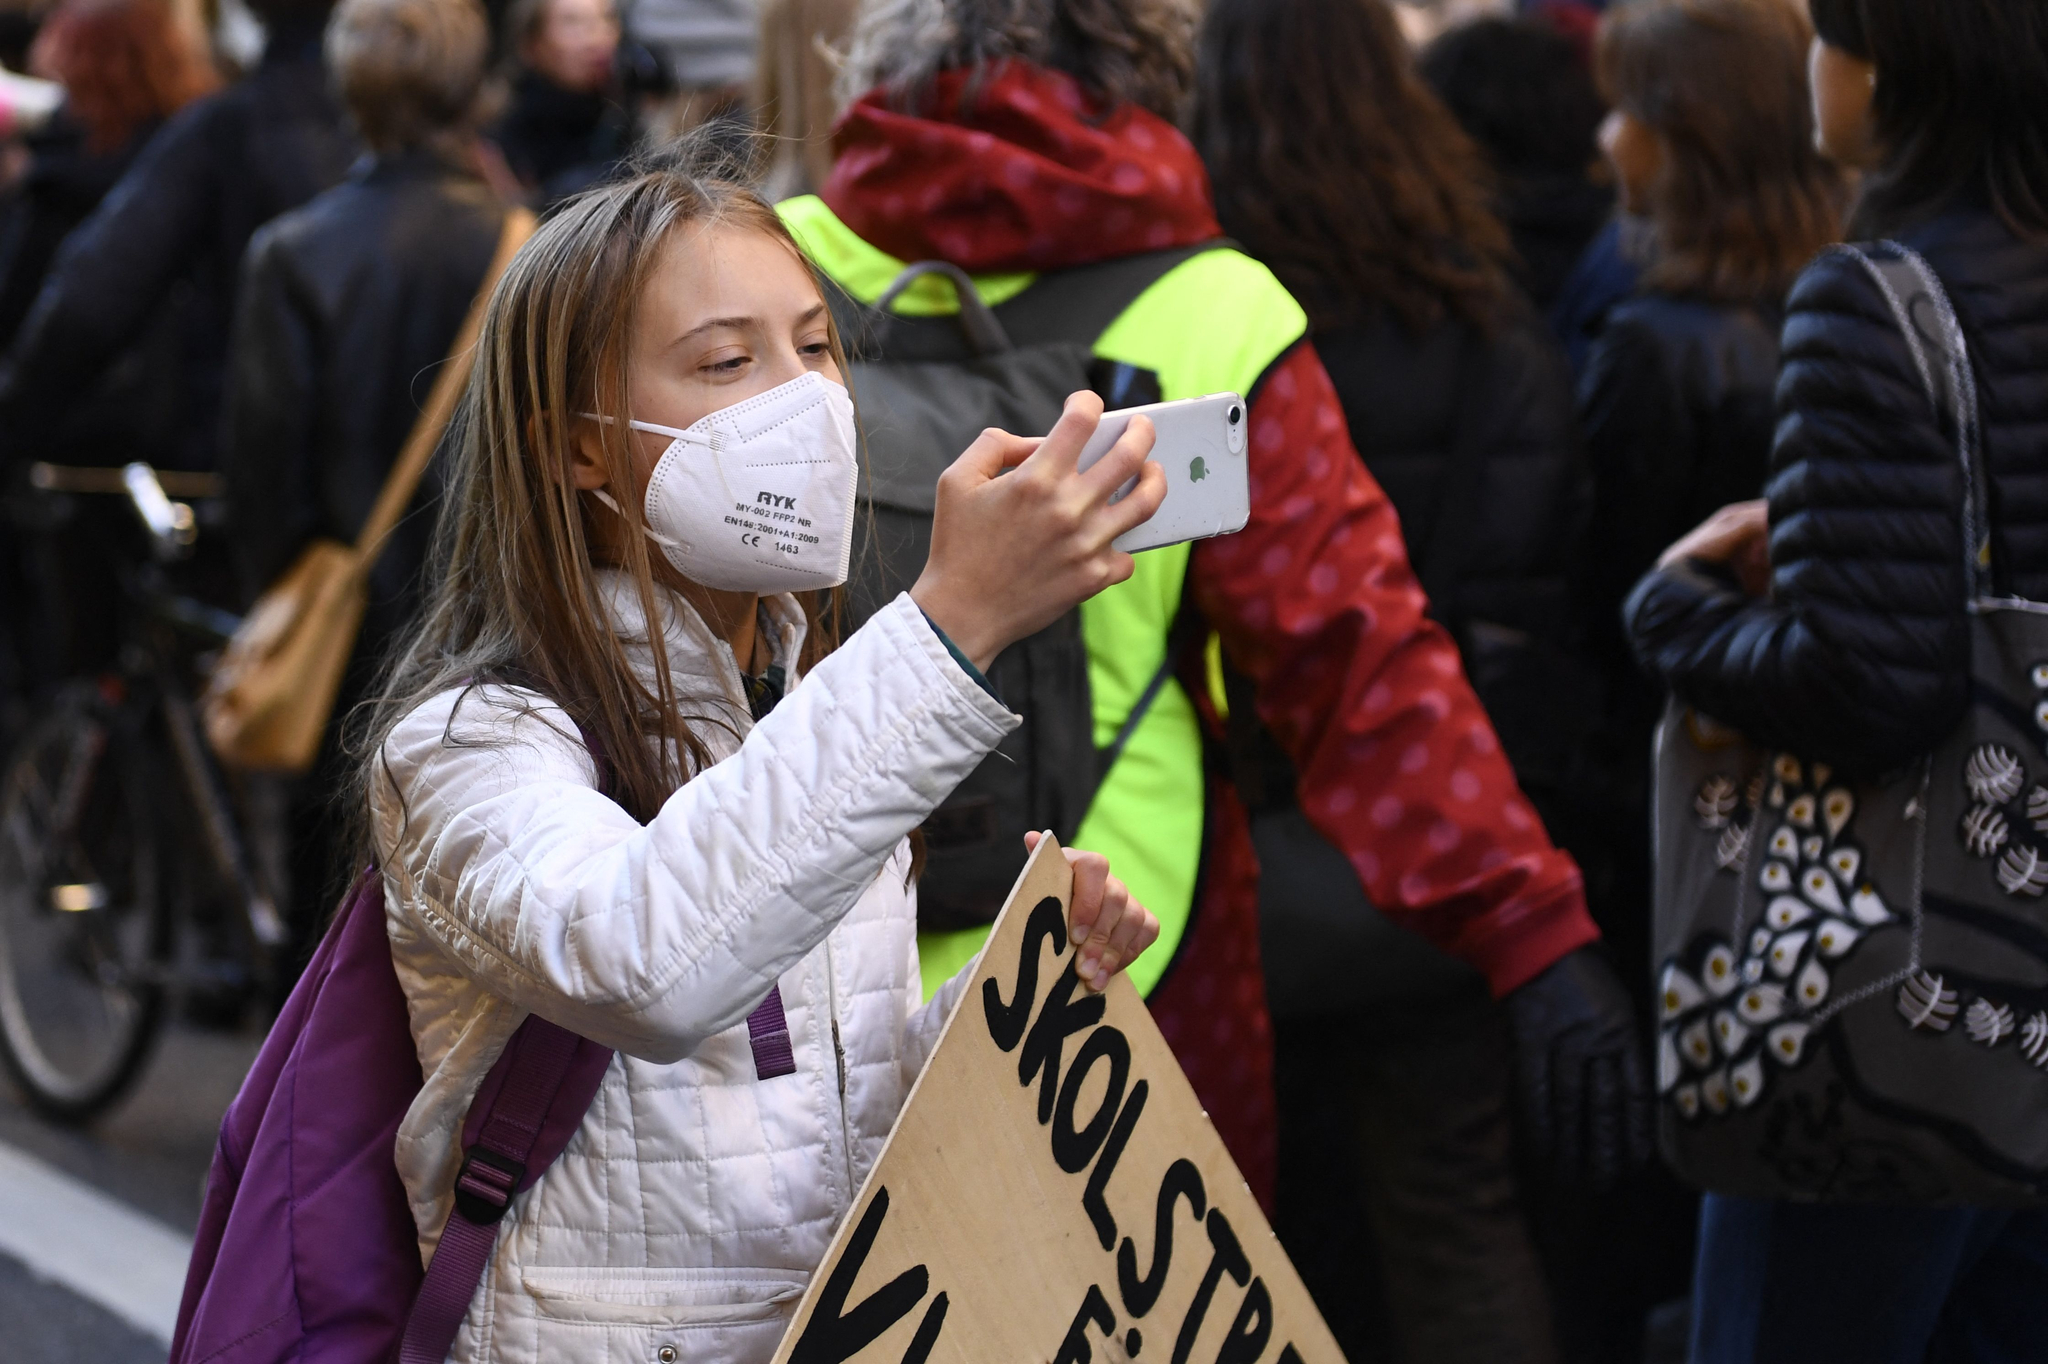 스웨덴의 기후 활동가 그레타 툰베리가 22일(현지시간) 스웨덴 스톡홀름에서 열린 기후 파업 시위 도중 손에 '기후 파업' 피켓을 든 채 휴대전화로 뭔가를 촬영하고 있다. AFP=연합뉴스